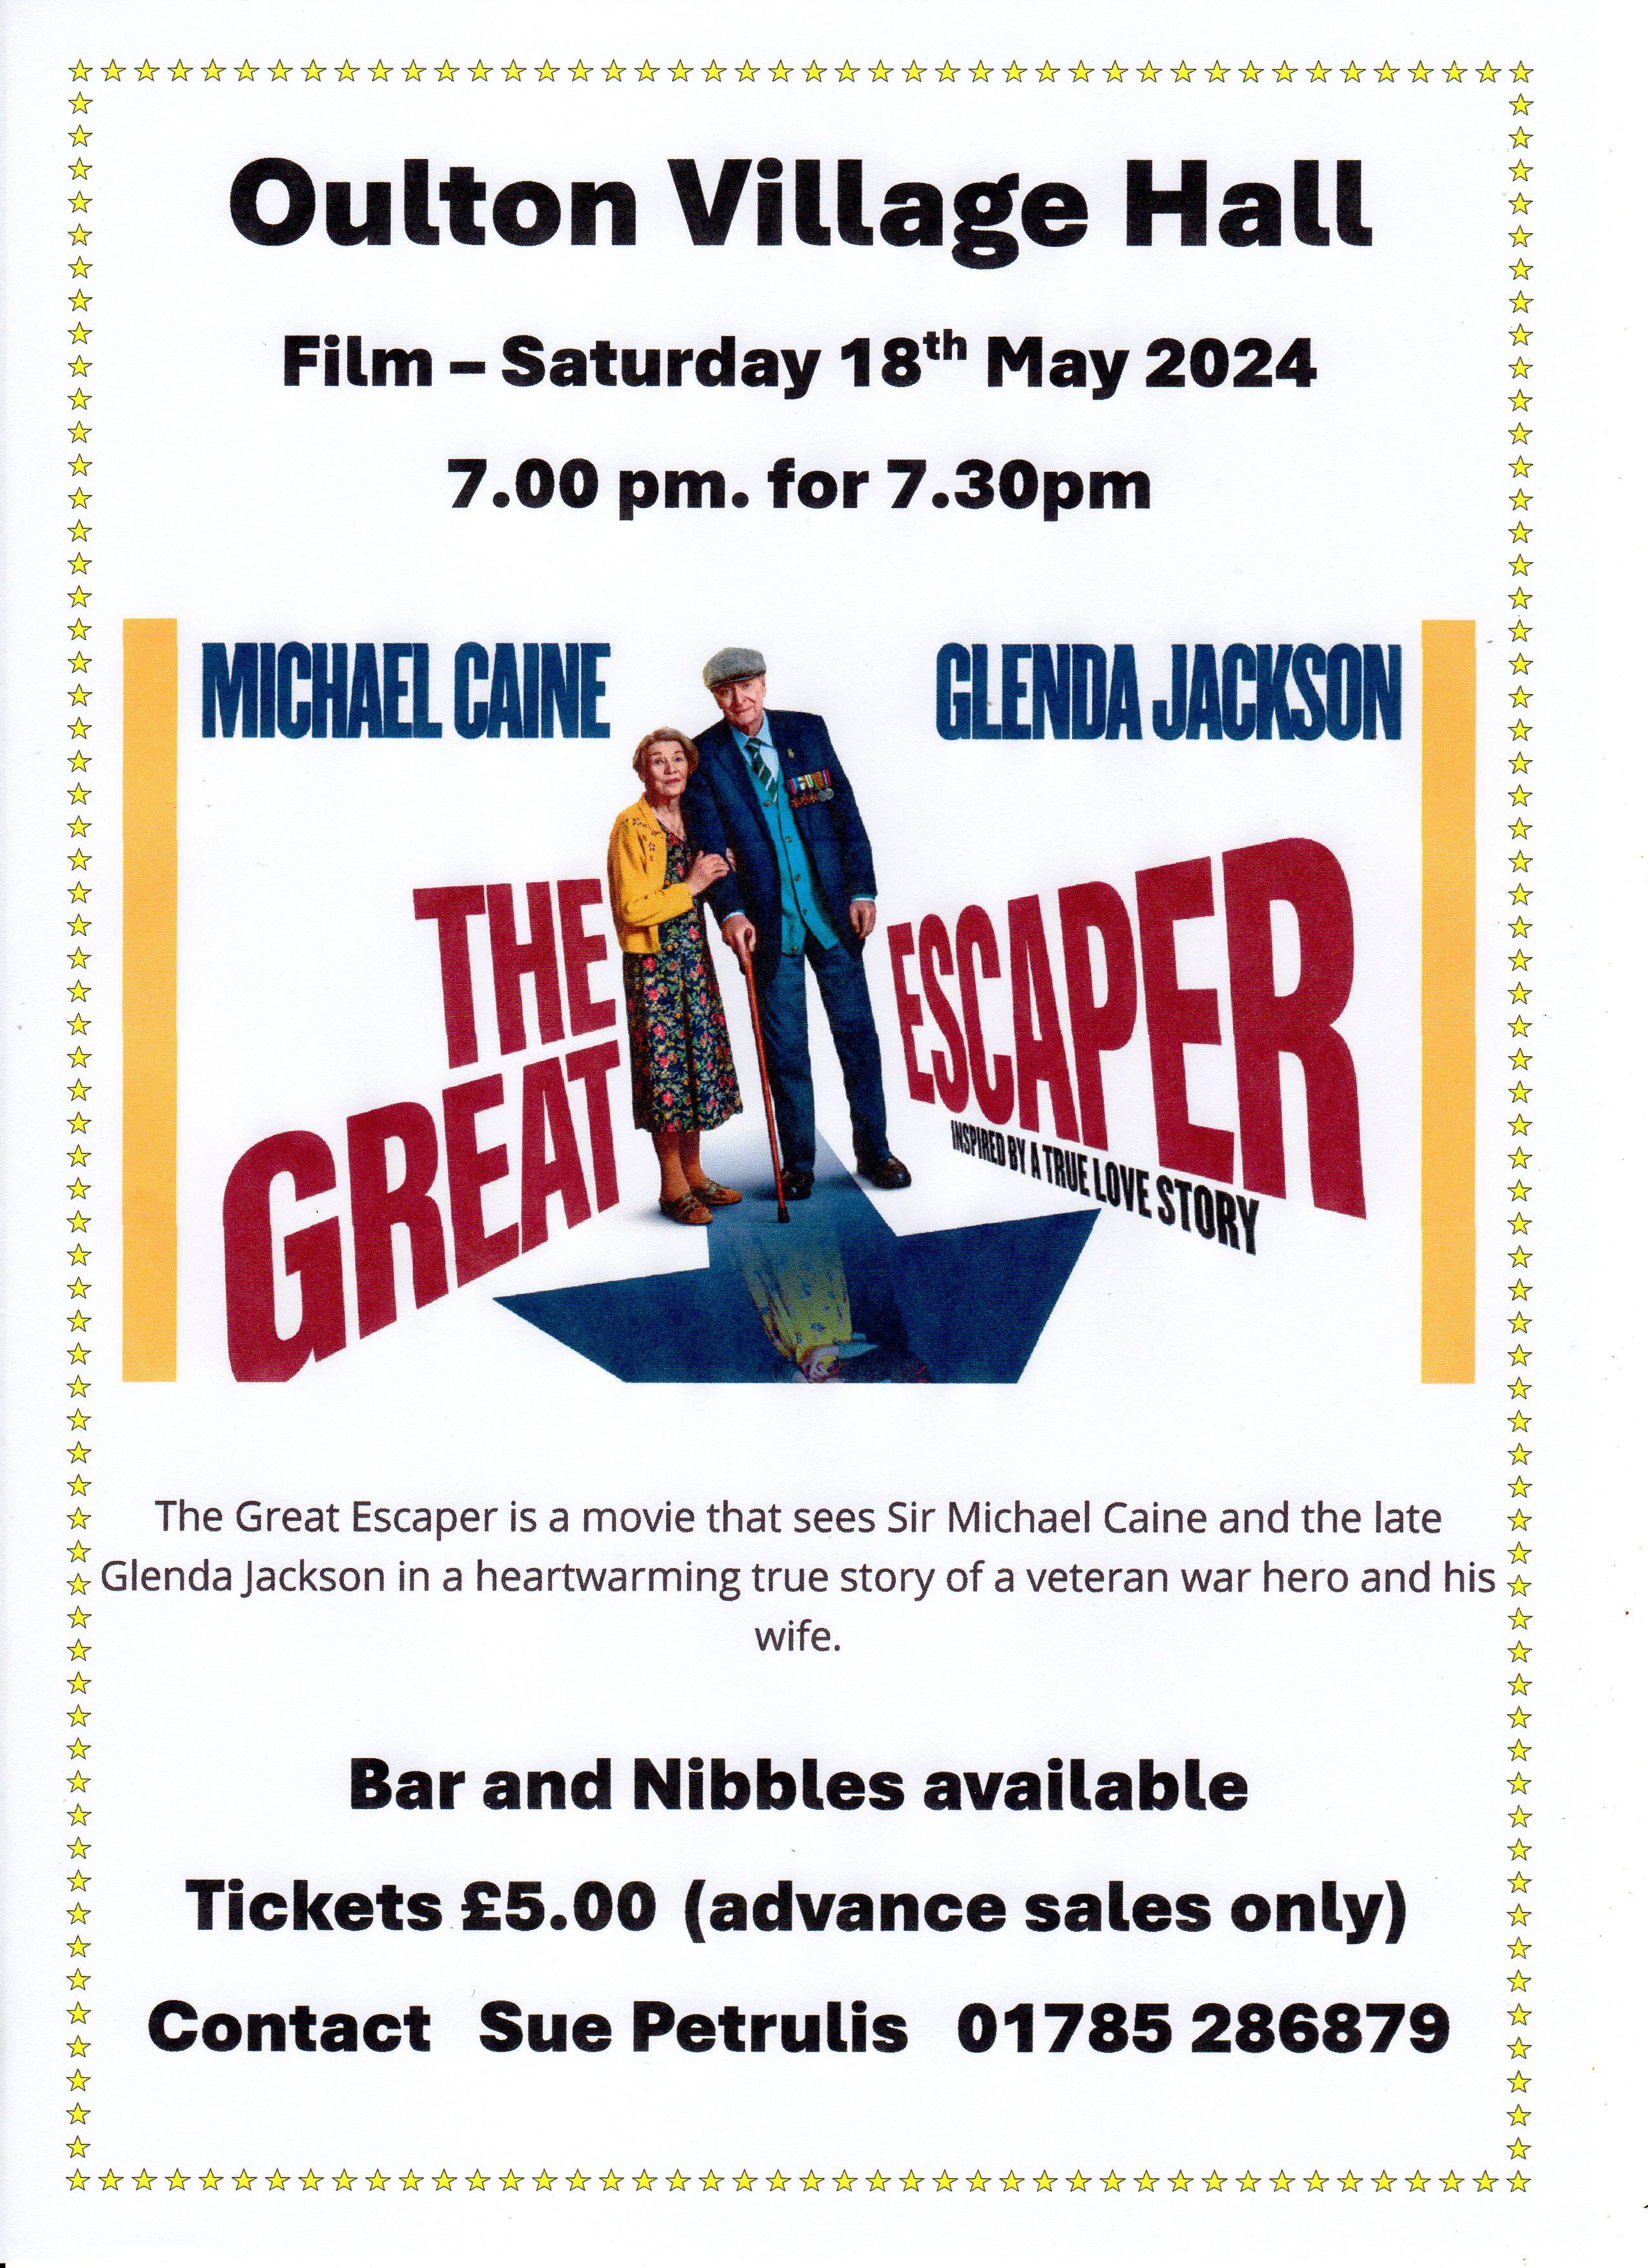 Film night 18th May